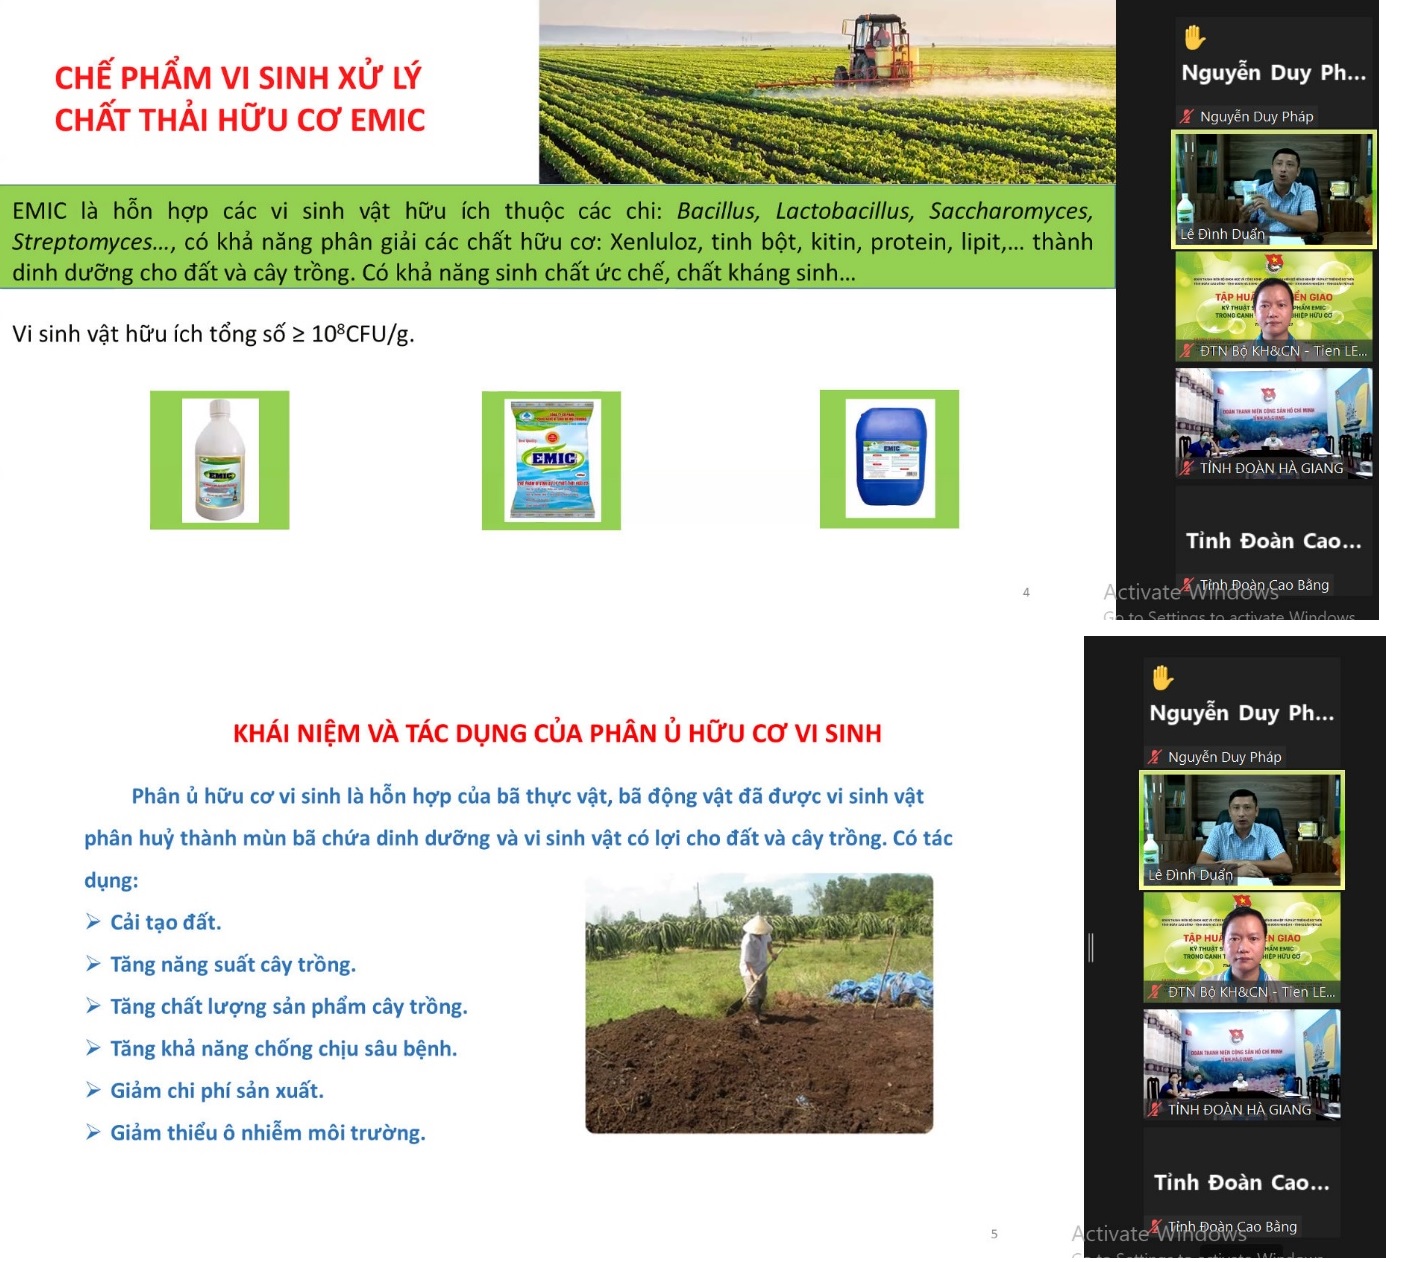 Chuyển giao kỹ thuật sử dụng chế phẩm EMIC trong canh tác nông nghiệp hữu cơ bằng hình thức trực tuyến -0